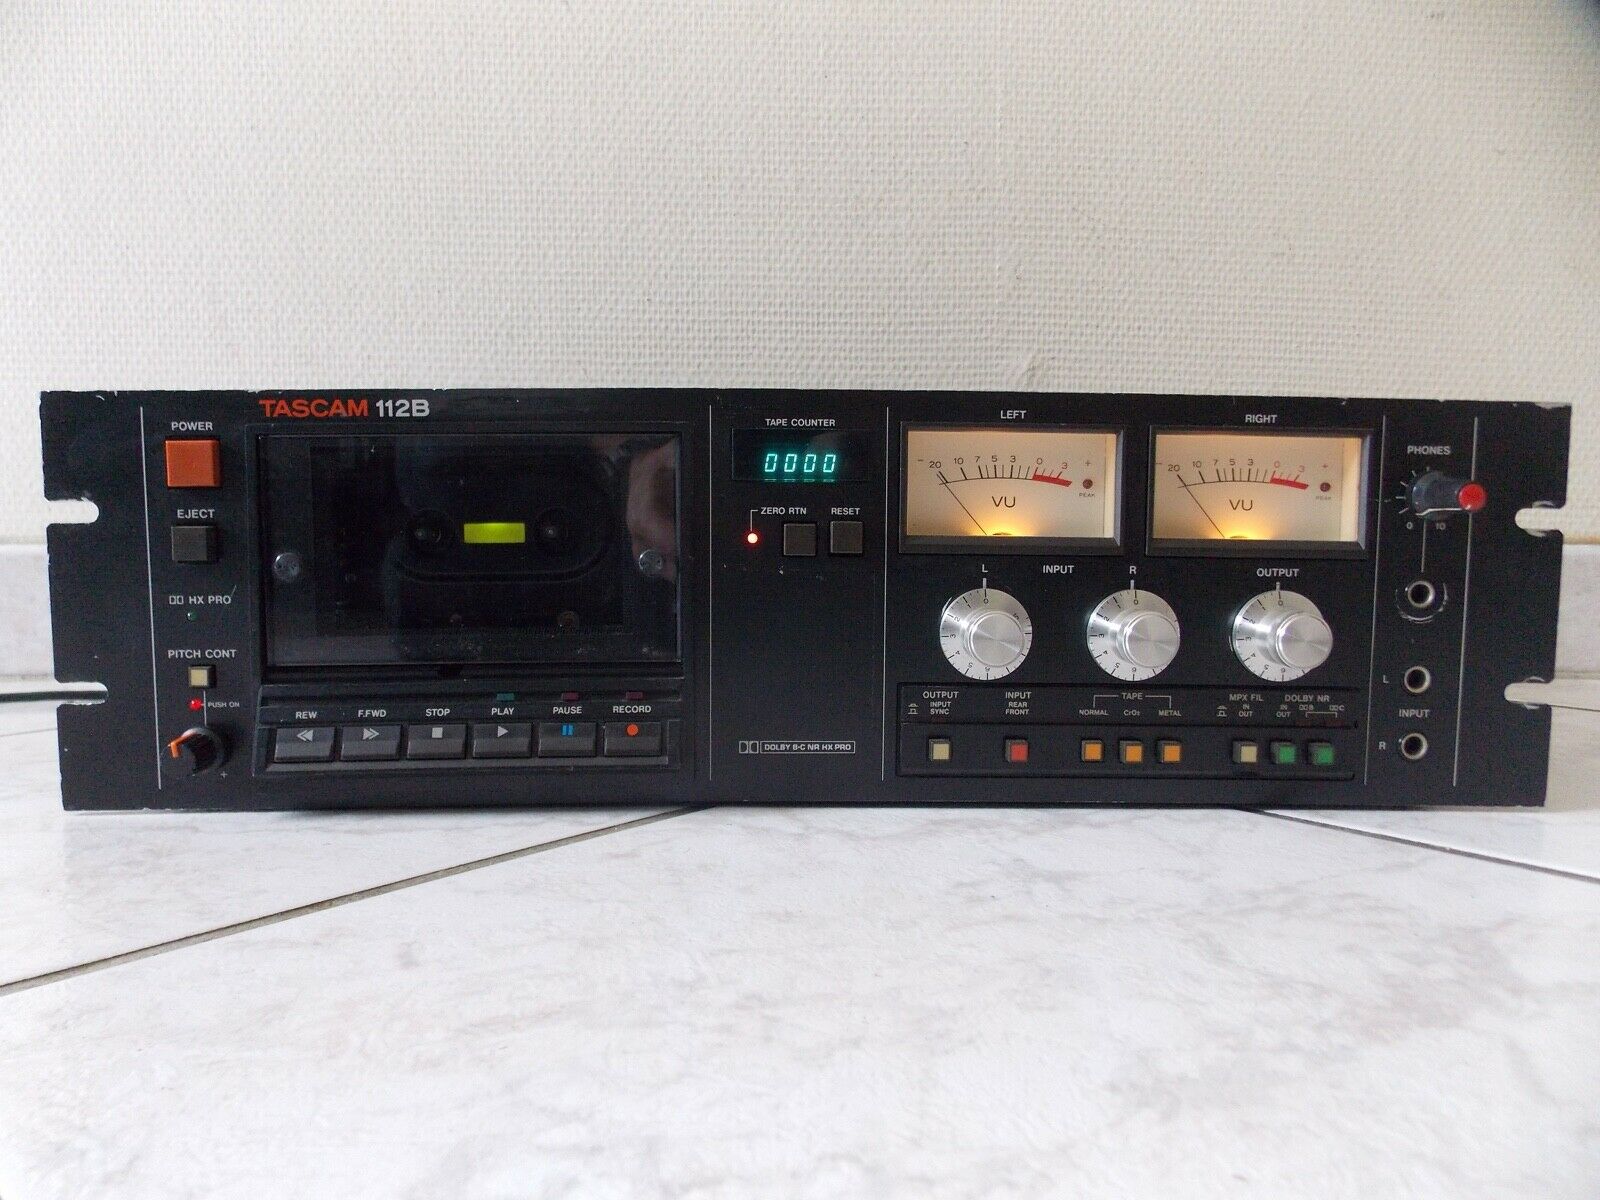 lecteur cassette tape deck player tascam 112B vintage occasion